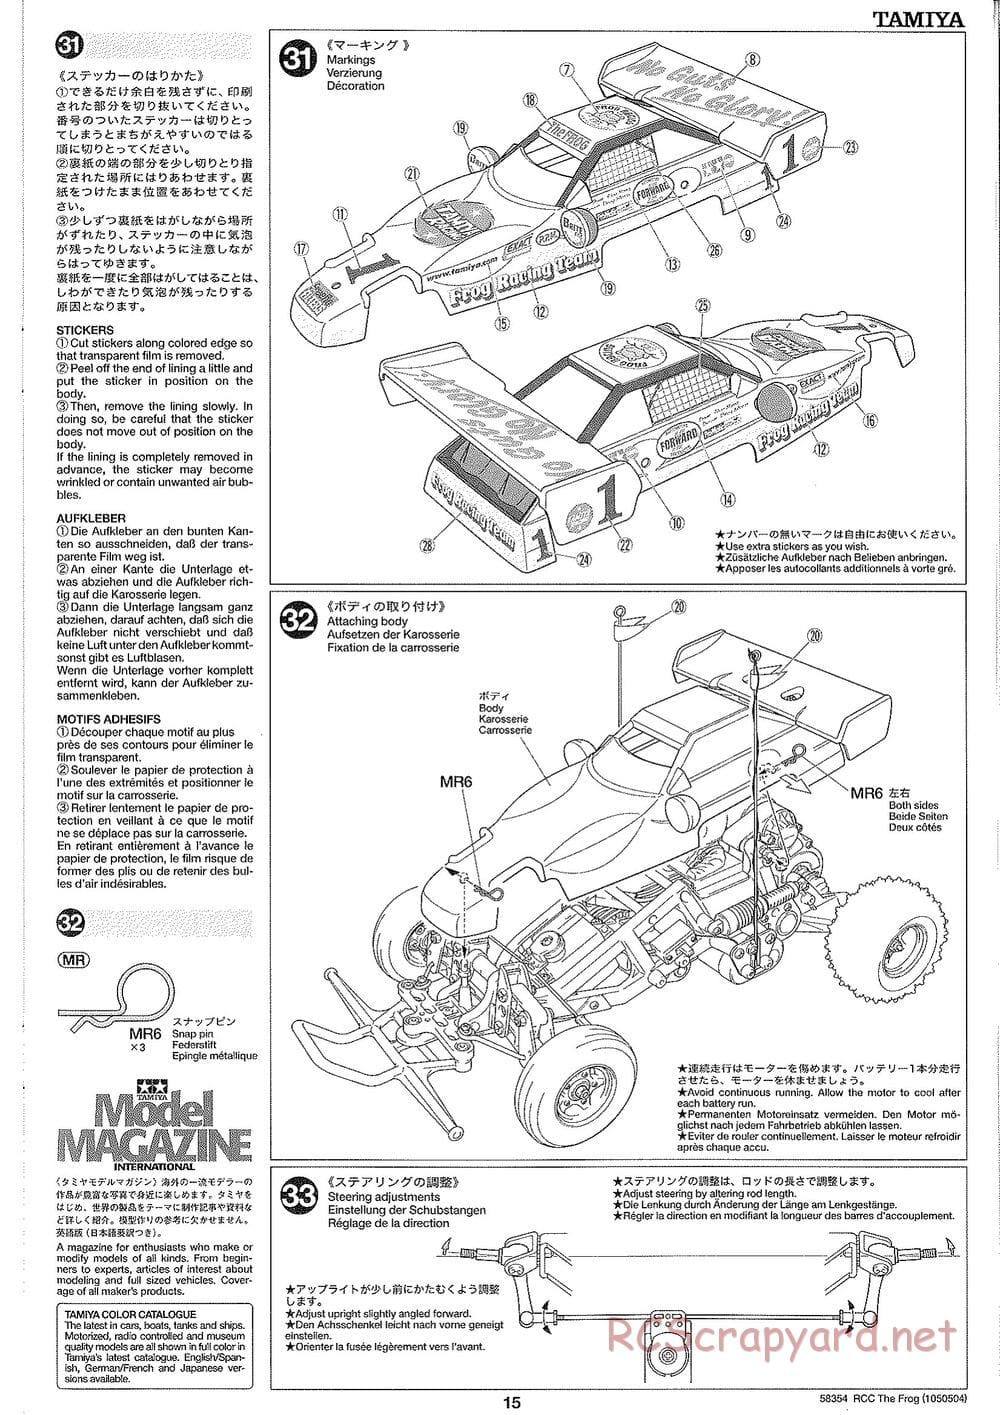 Tamiya - The Frog - 2005 - ORV Chassis - Manual - Page 15